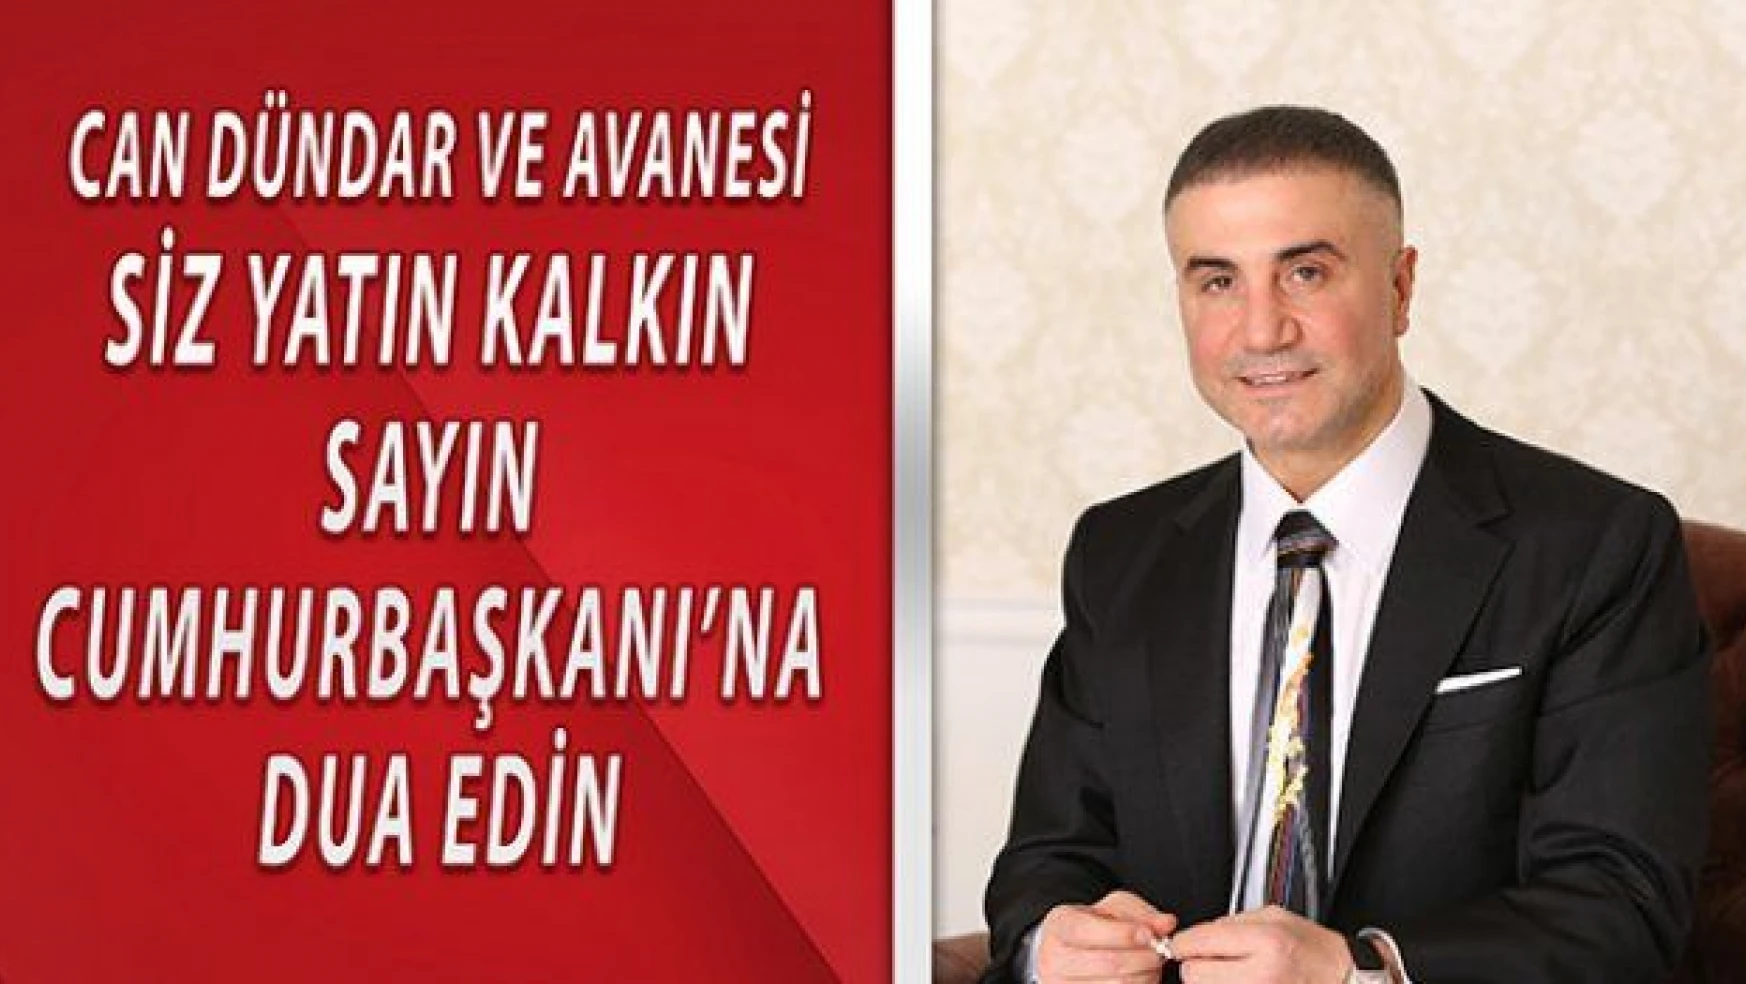 Sedat Peker: Diktatör dediğiniz Erdoğan'a dua edin! Cumhurbaşkanı olsam asardım!